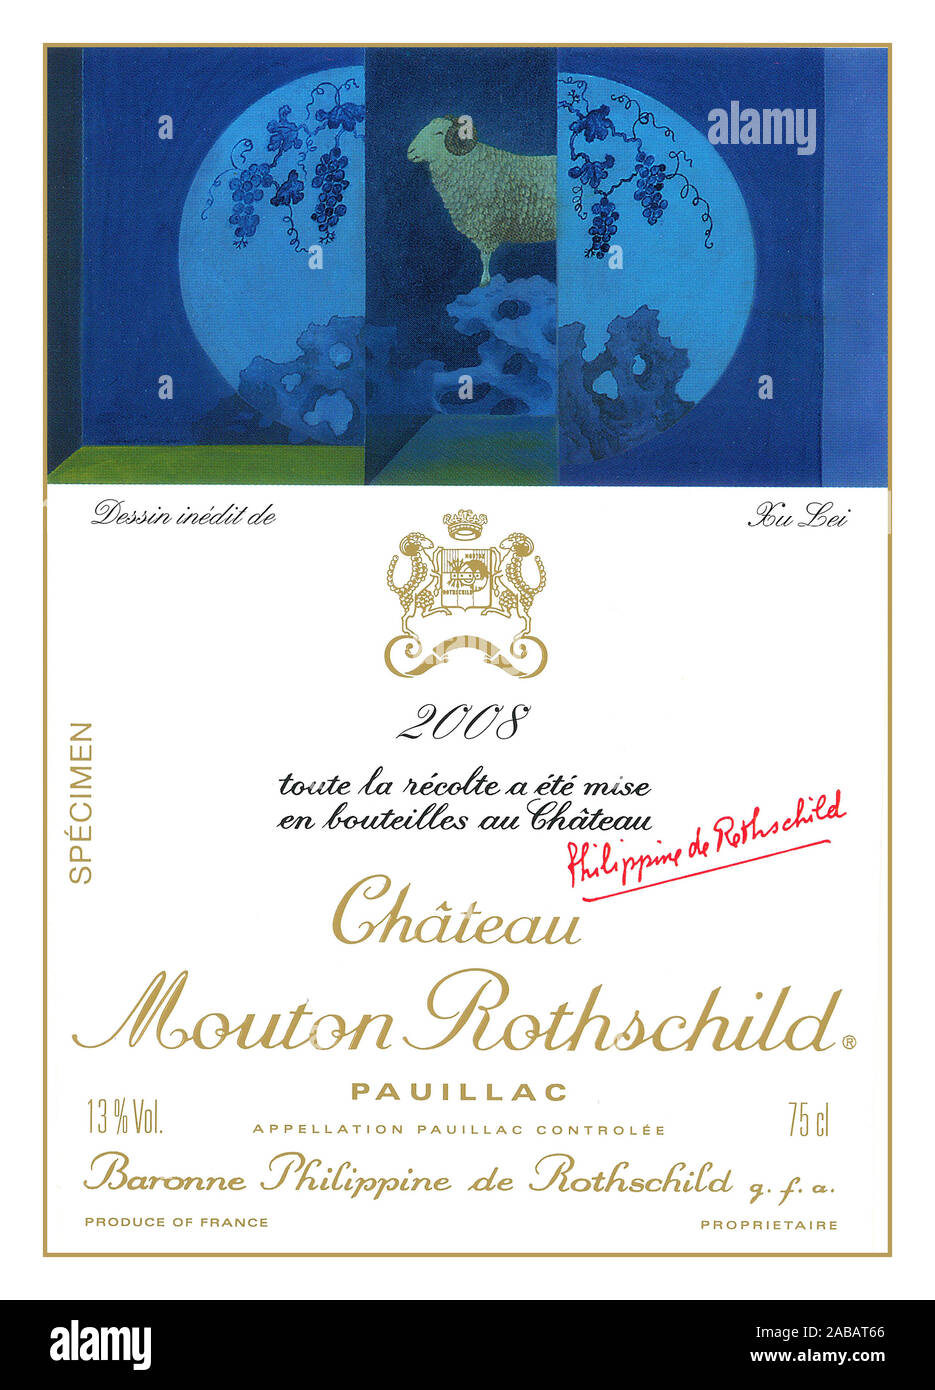 PAUILLAC ANNATA Vino etichetta del flacone per uno dei più grandi vini di Bordeaux Château Mouton Rothschild 2008 Pauillac rosso vino di Bordeaux Foto Stock